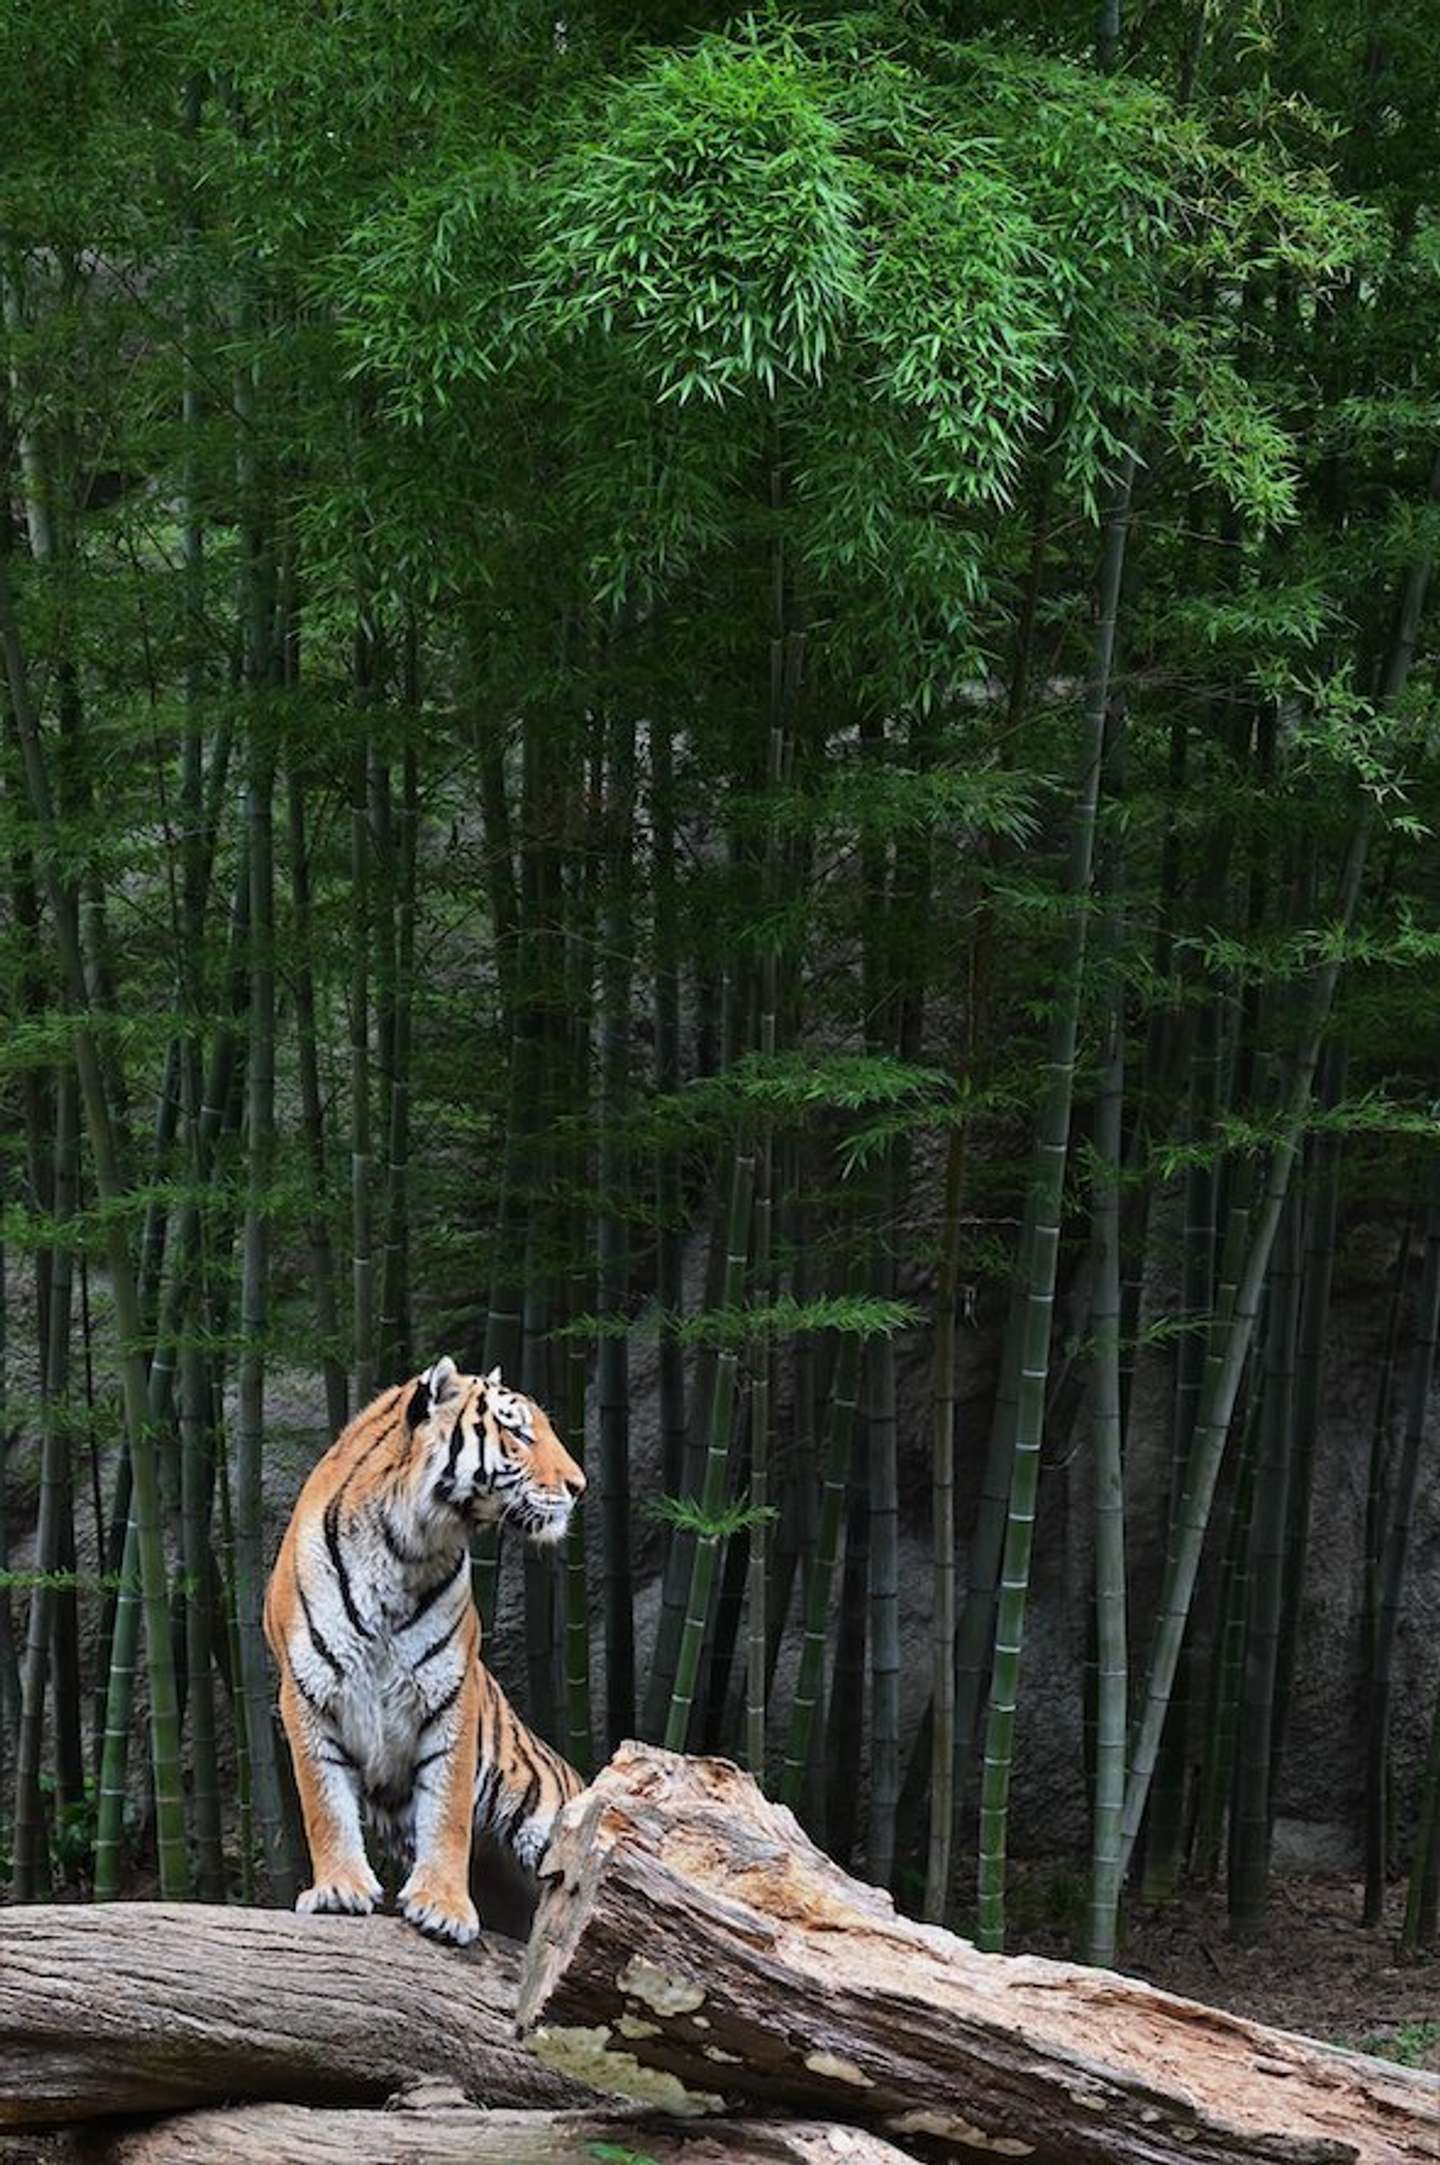 まるで 山月記 の世界だ 浜松の動物園で撮影された 竹林にたたずむ虎 に反響 21年6月30日 エキサイトニュース